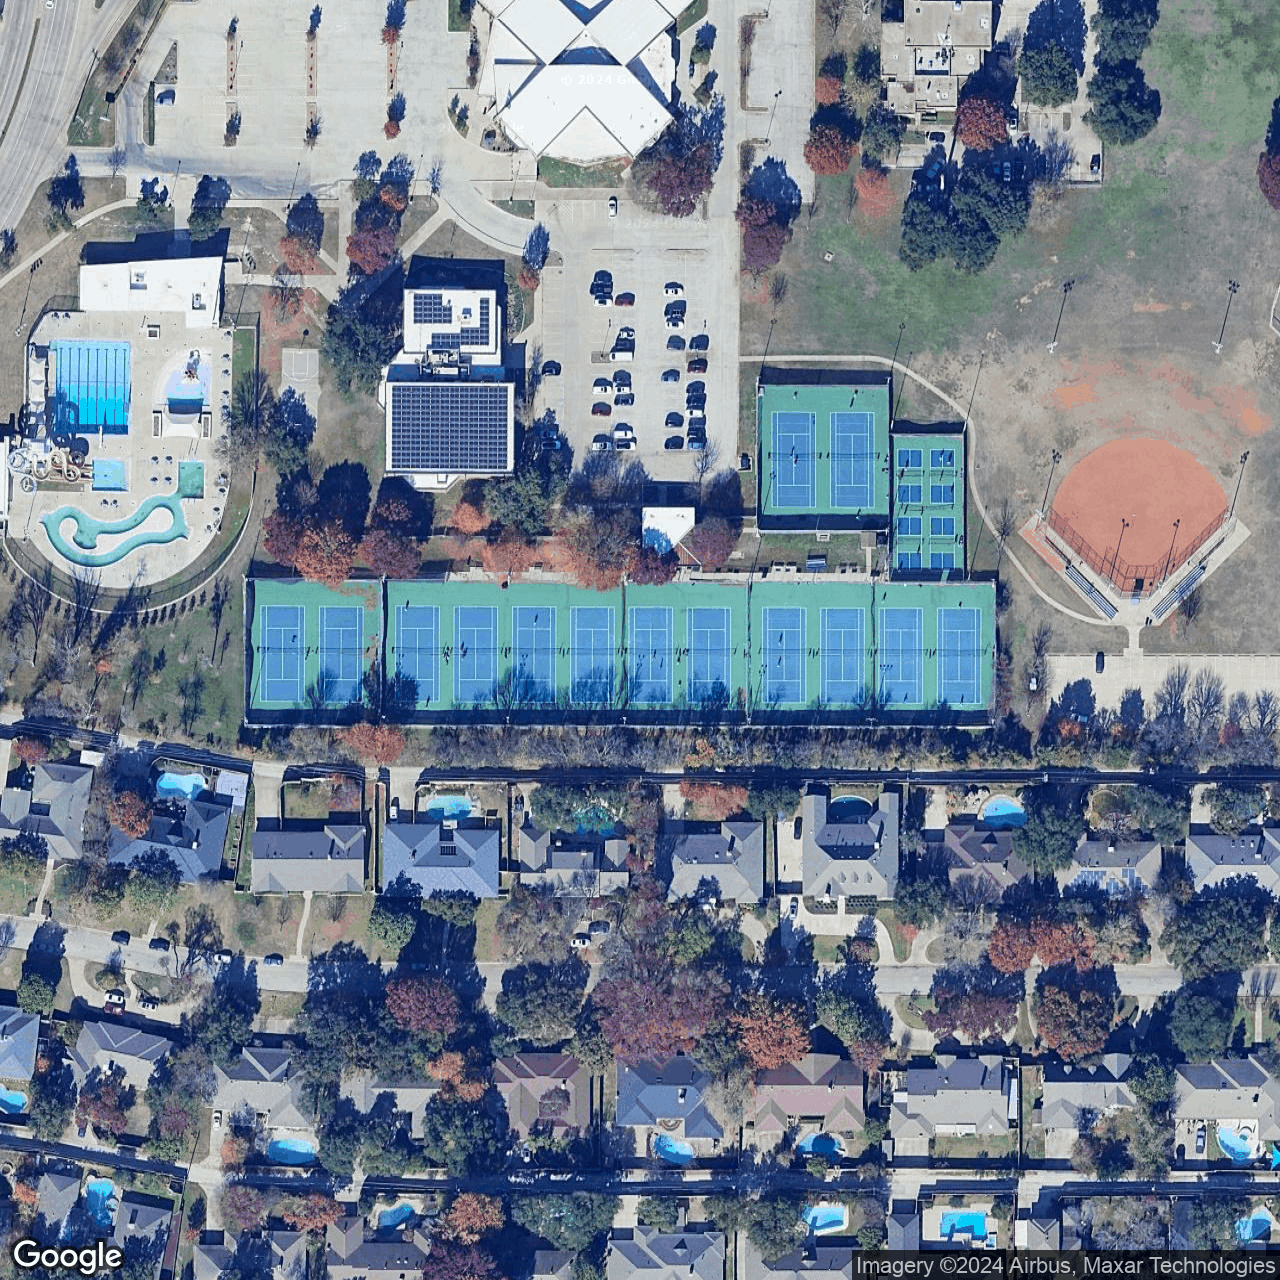 Fretz Tennis Center